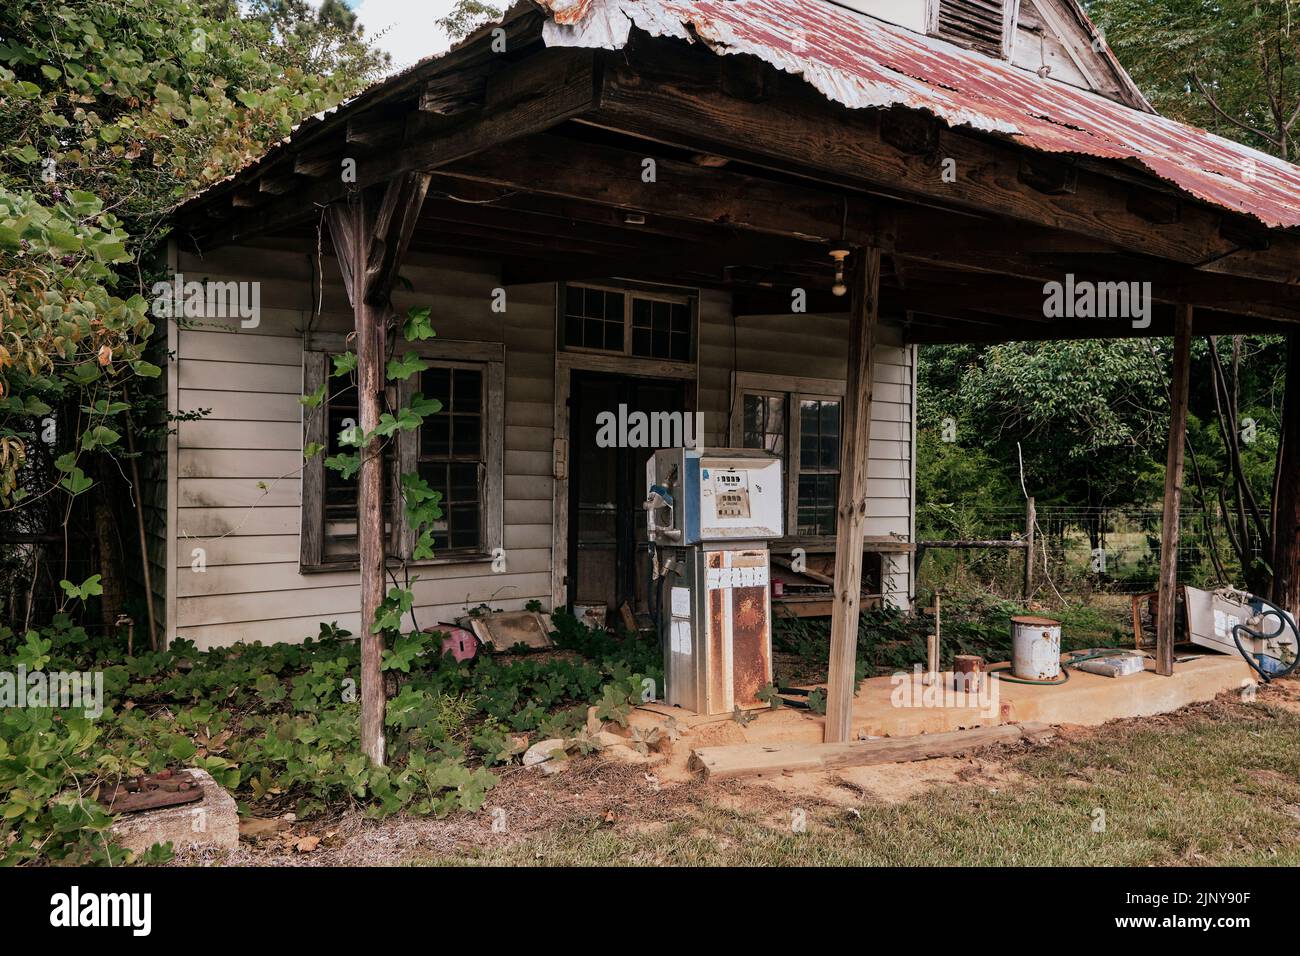 Une vieille station d'essence fermée et abandonnée, ou une station-service, le long d'une route de campagne dans les régions rurales de l'Alabama, USA. Banque D'Images